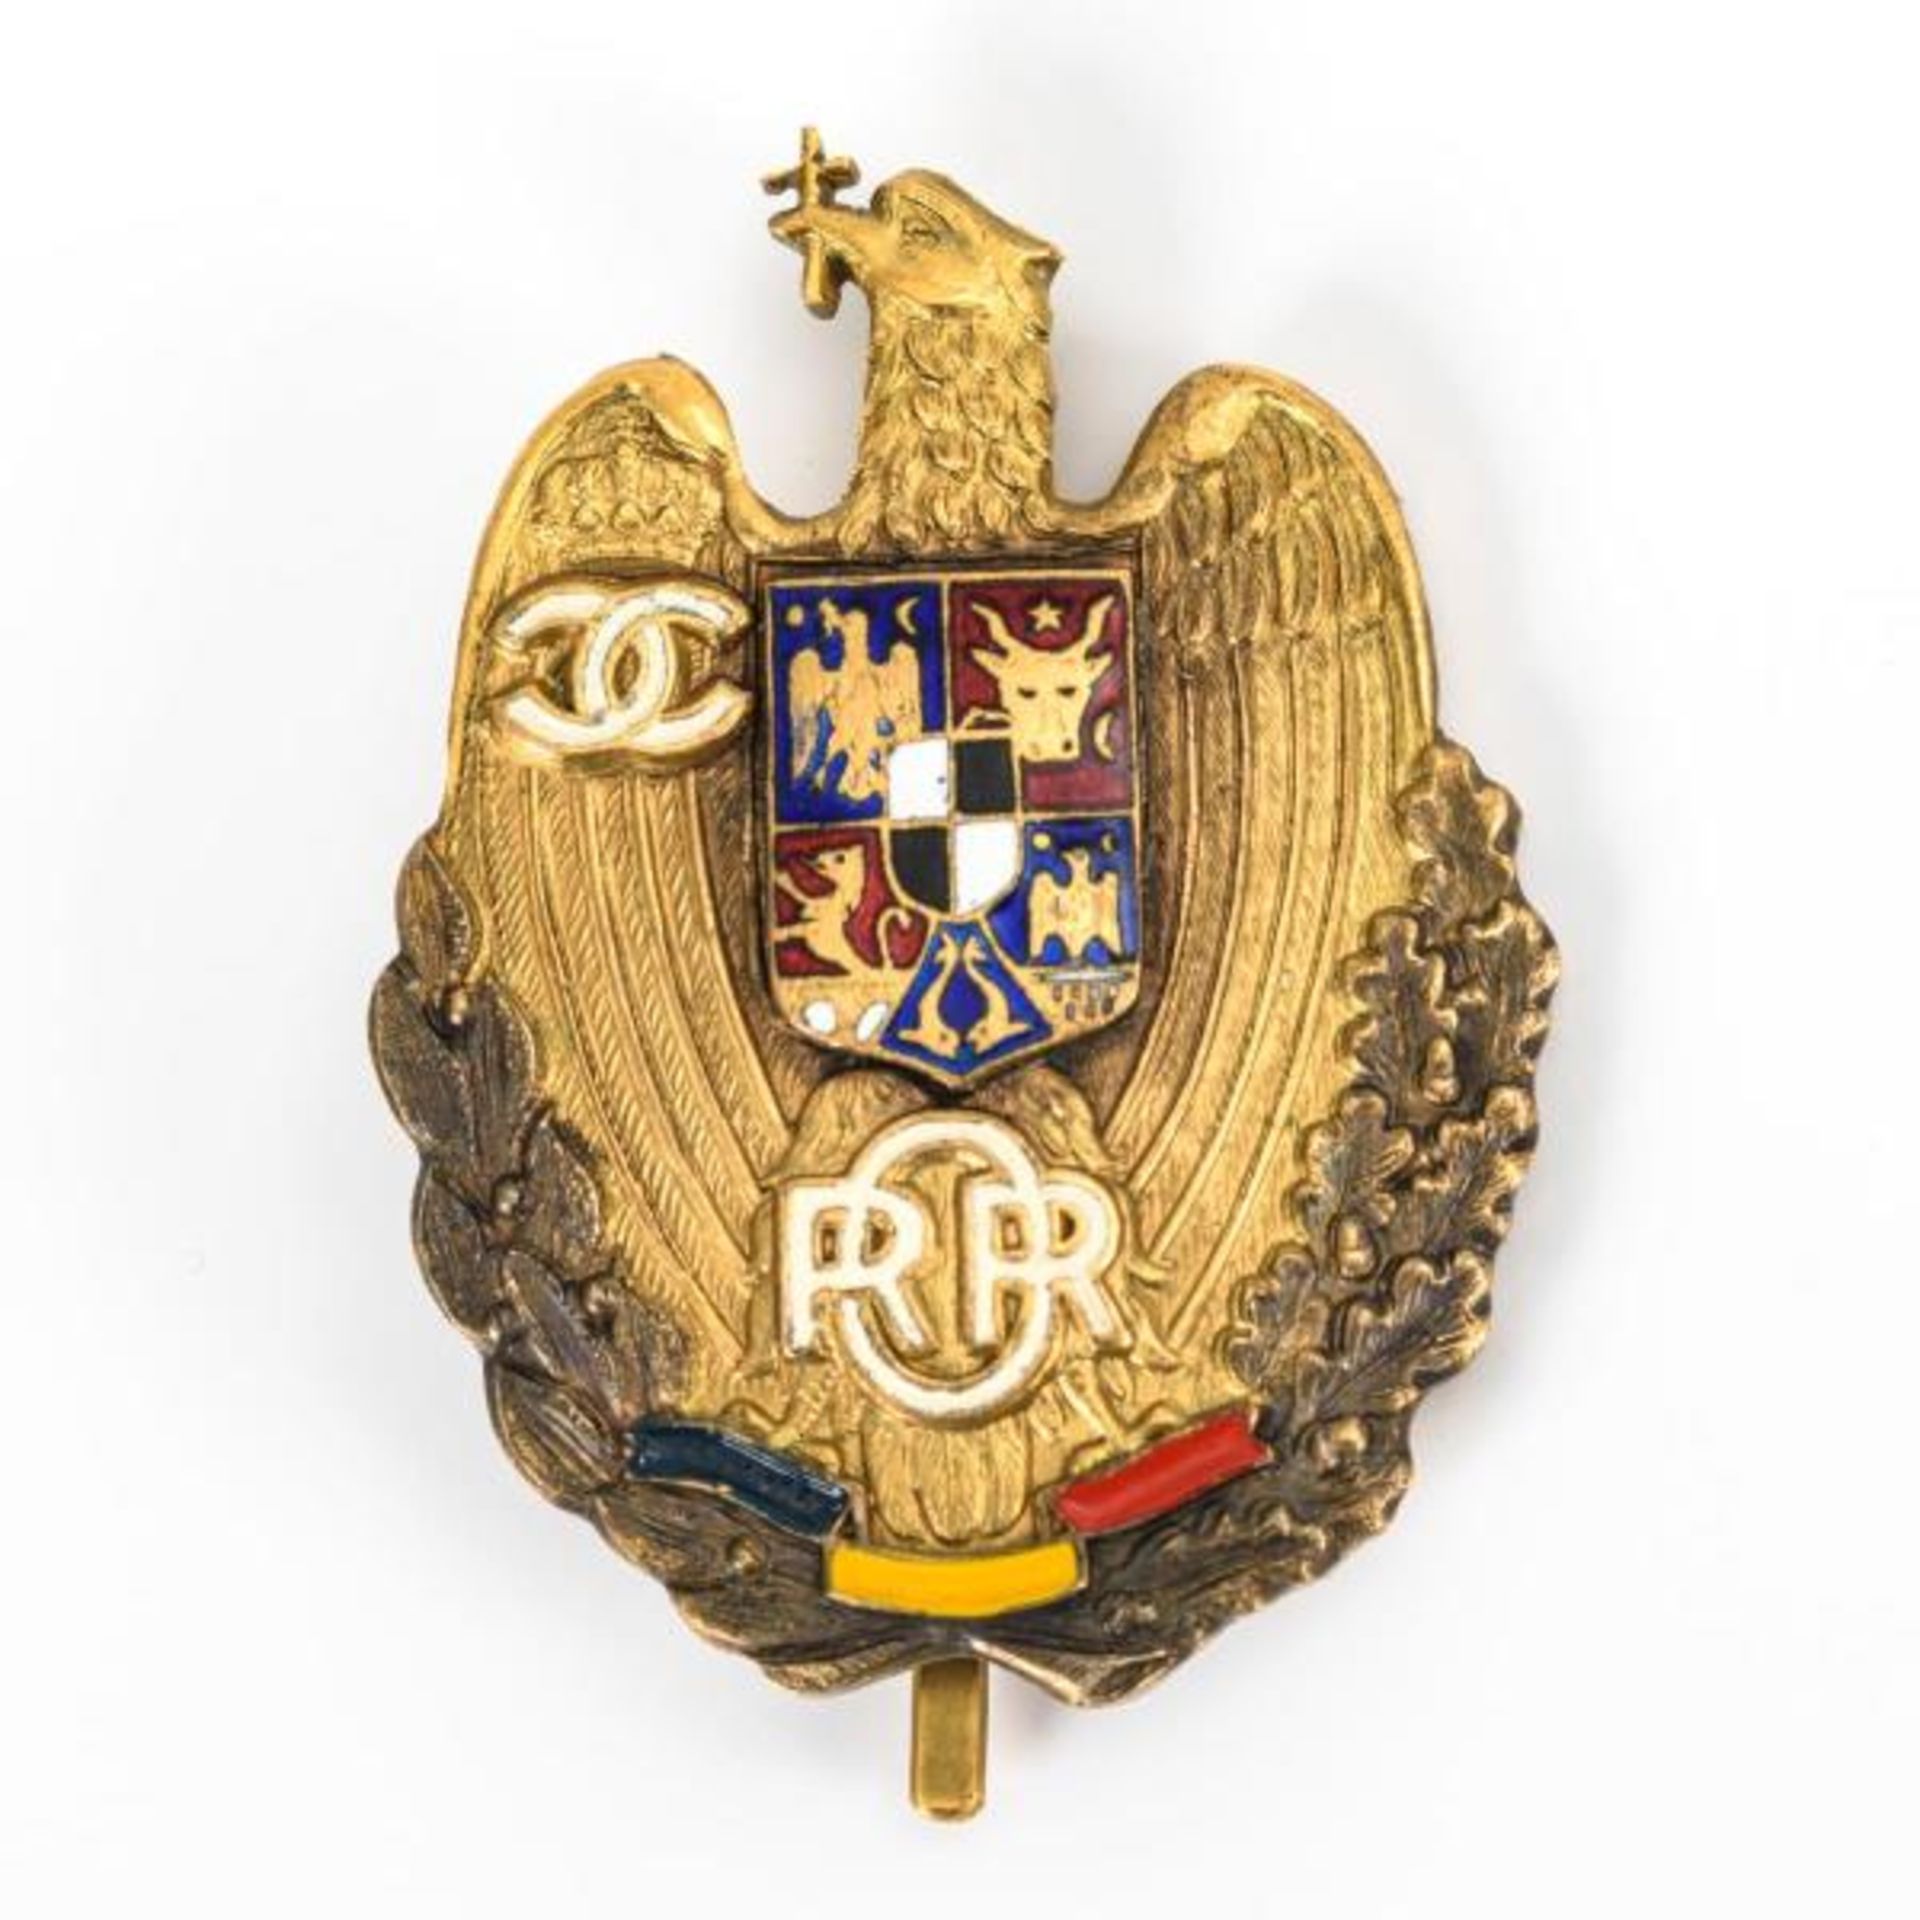 Rumänisches Abzeichen mit Adler, Wappen und Monogramm